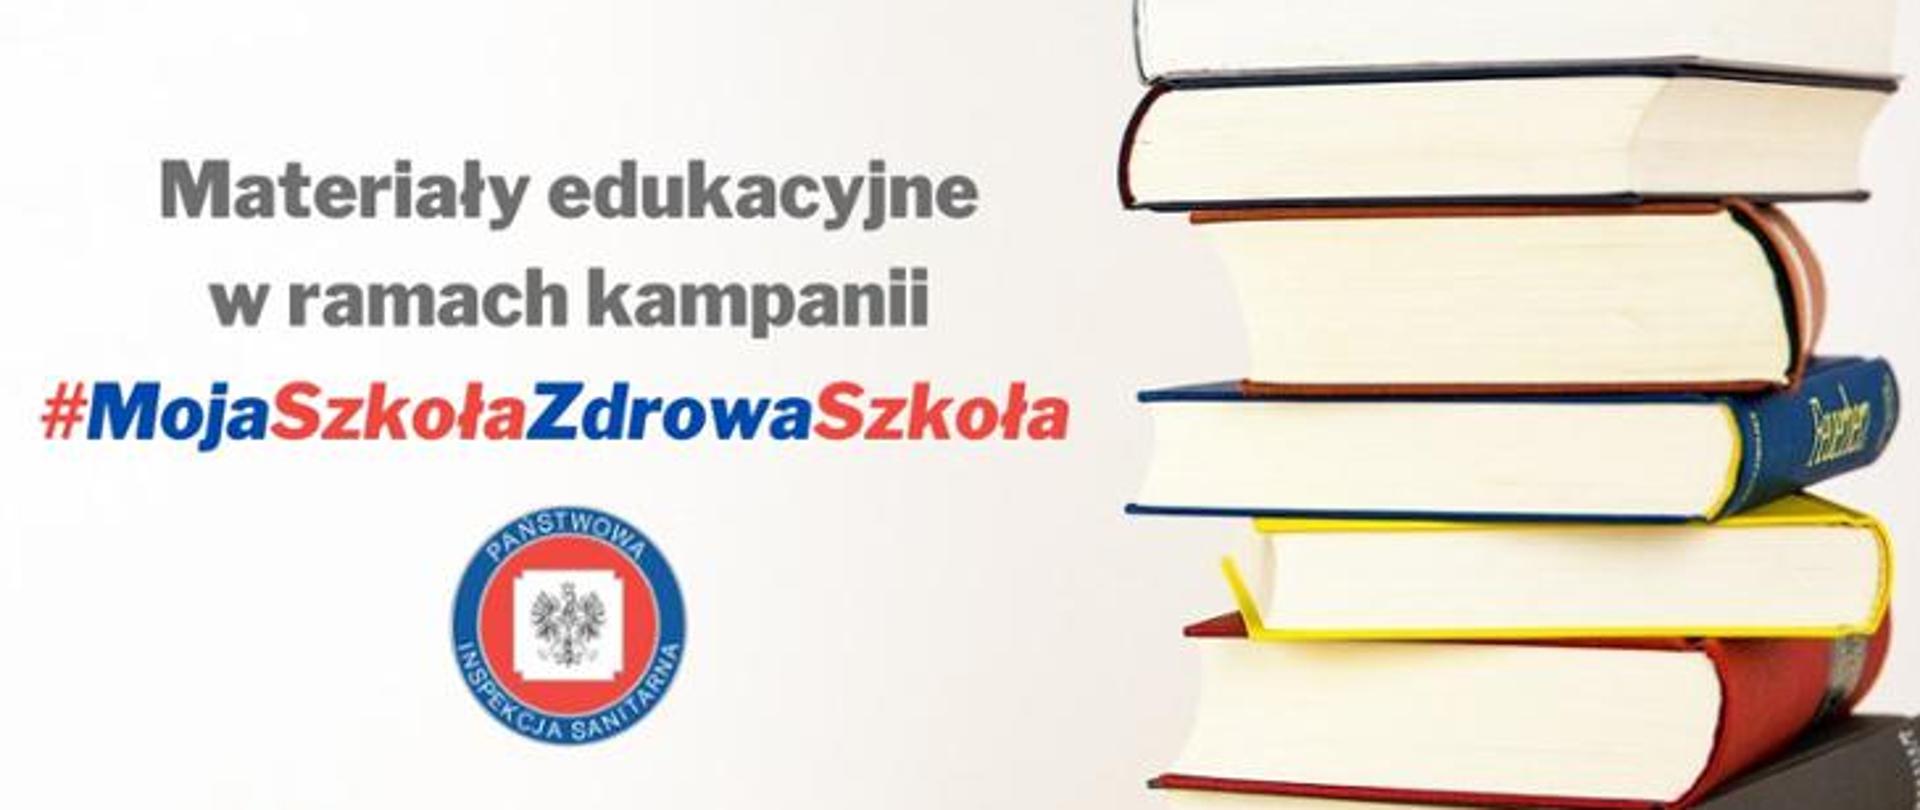 Na grafice znajduje się napis: Materiały edukacyjne w ramach kampanii #MojaSzkołaZdrowaSzkoła. Poniżej widnieje logo Państwowej Inspekcji Sanitarnej. Po prawej stronie napisu oraz logo widoczny jest stos książek.